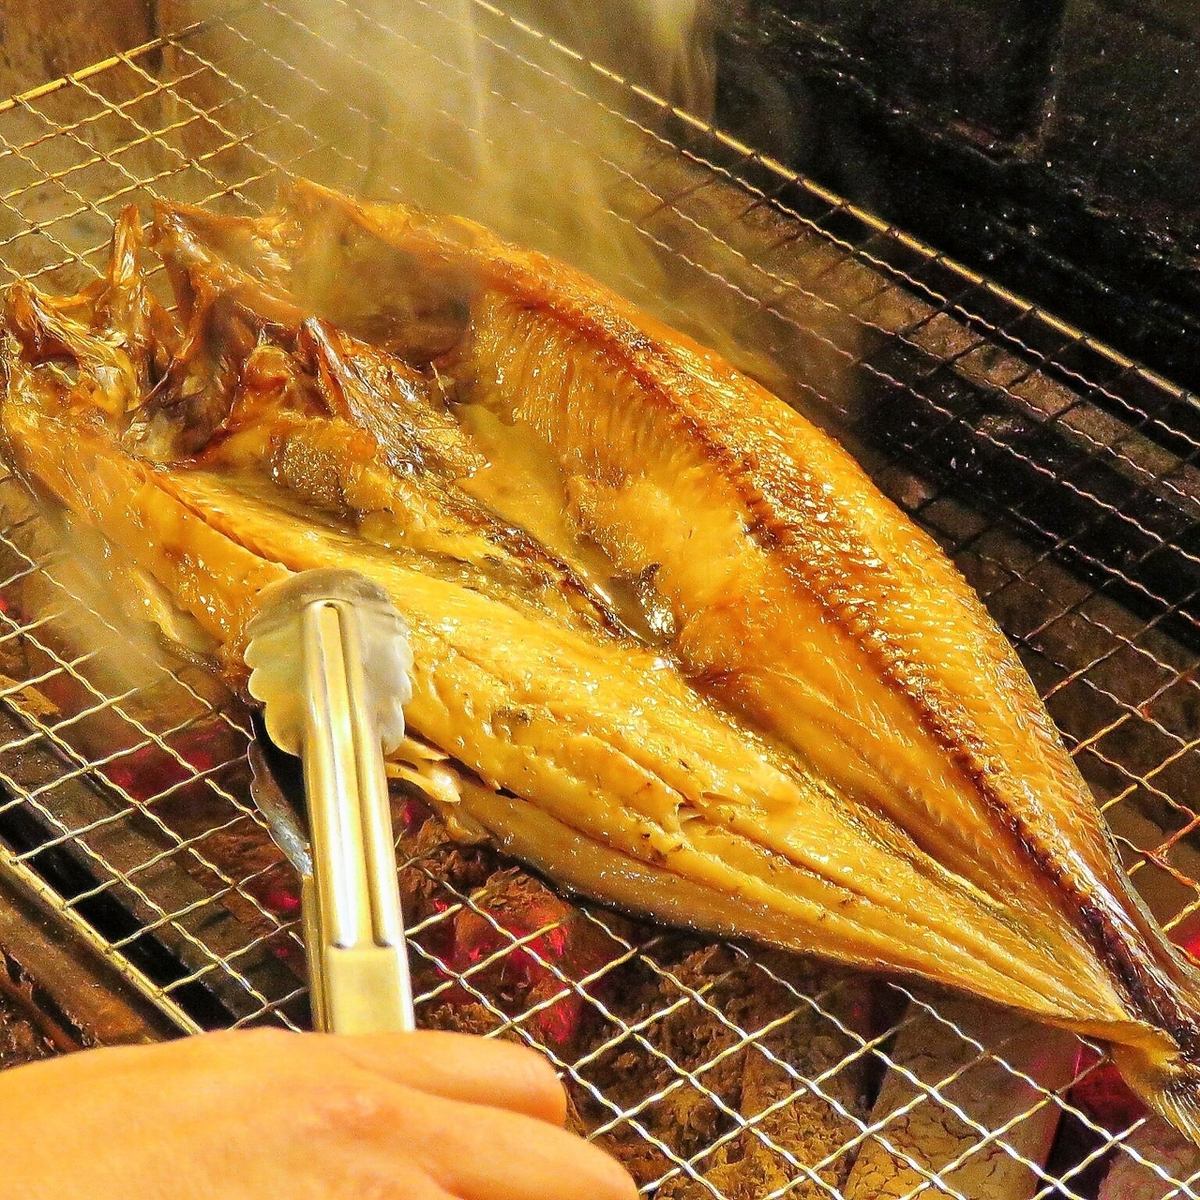 以北海道的美味海鲜料理和严选全国各地的当地酒恭候您的光临！